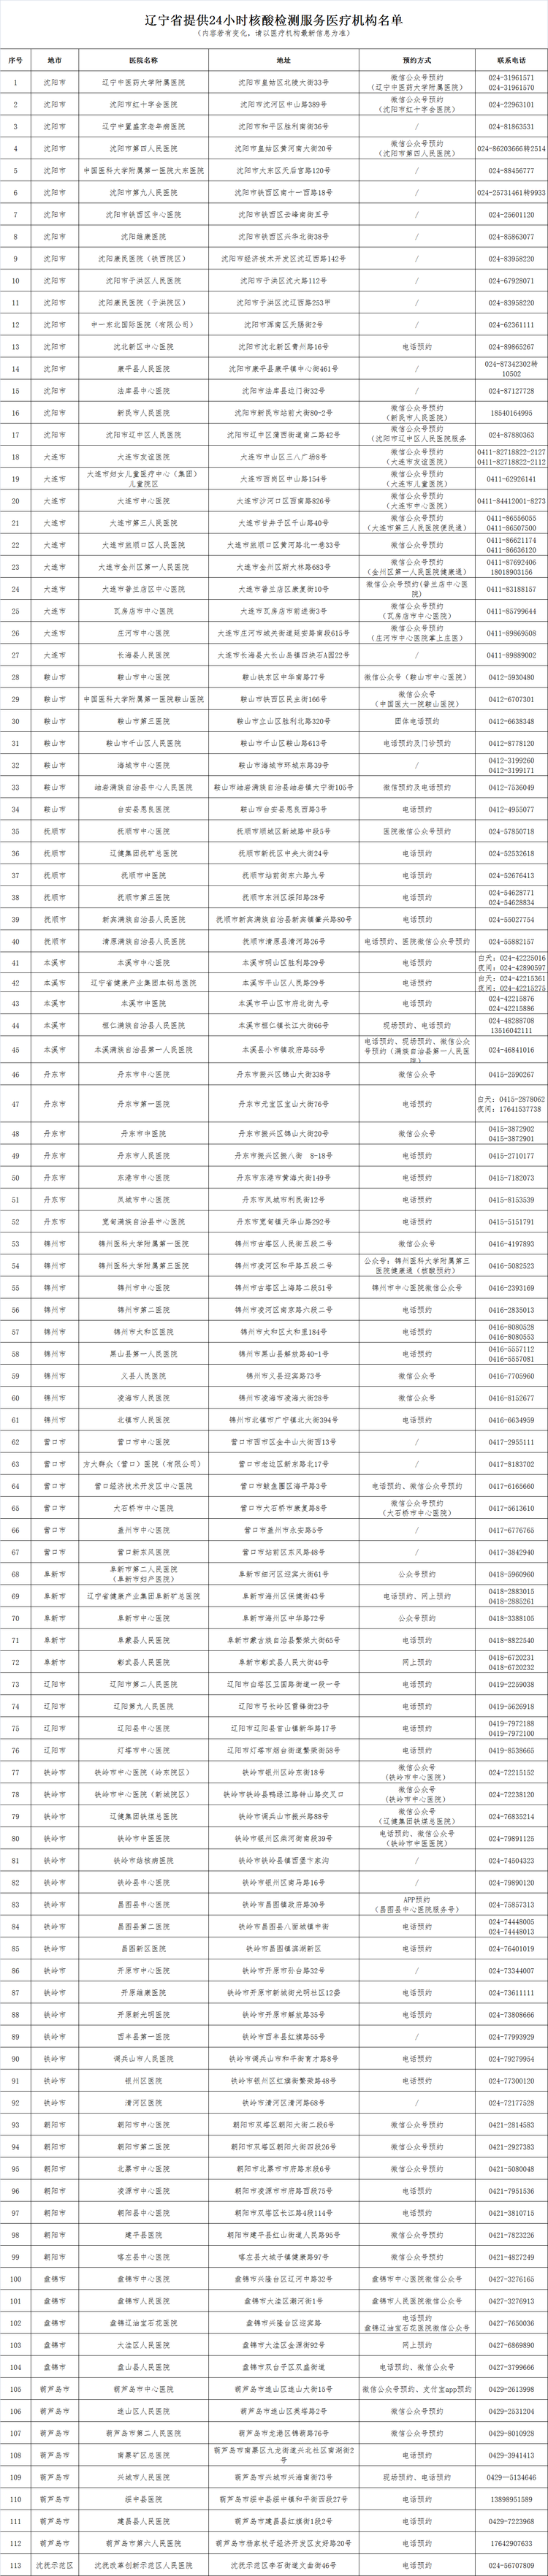 遼寧省提供24小時核酸檢測服務醫療機構名單_fororder_098d35ae7b604ff3e5e9bfd57b3e1e6